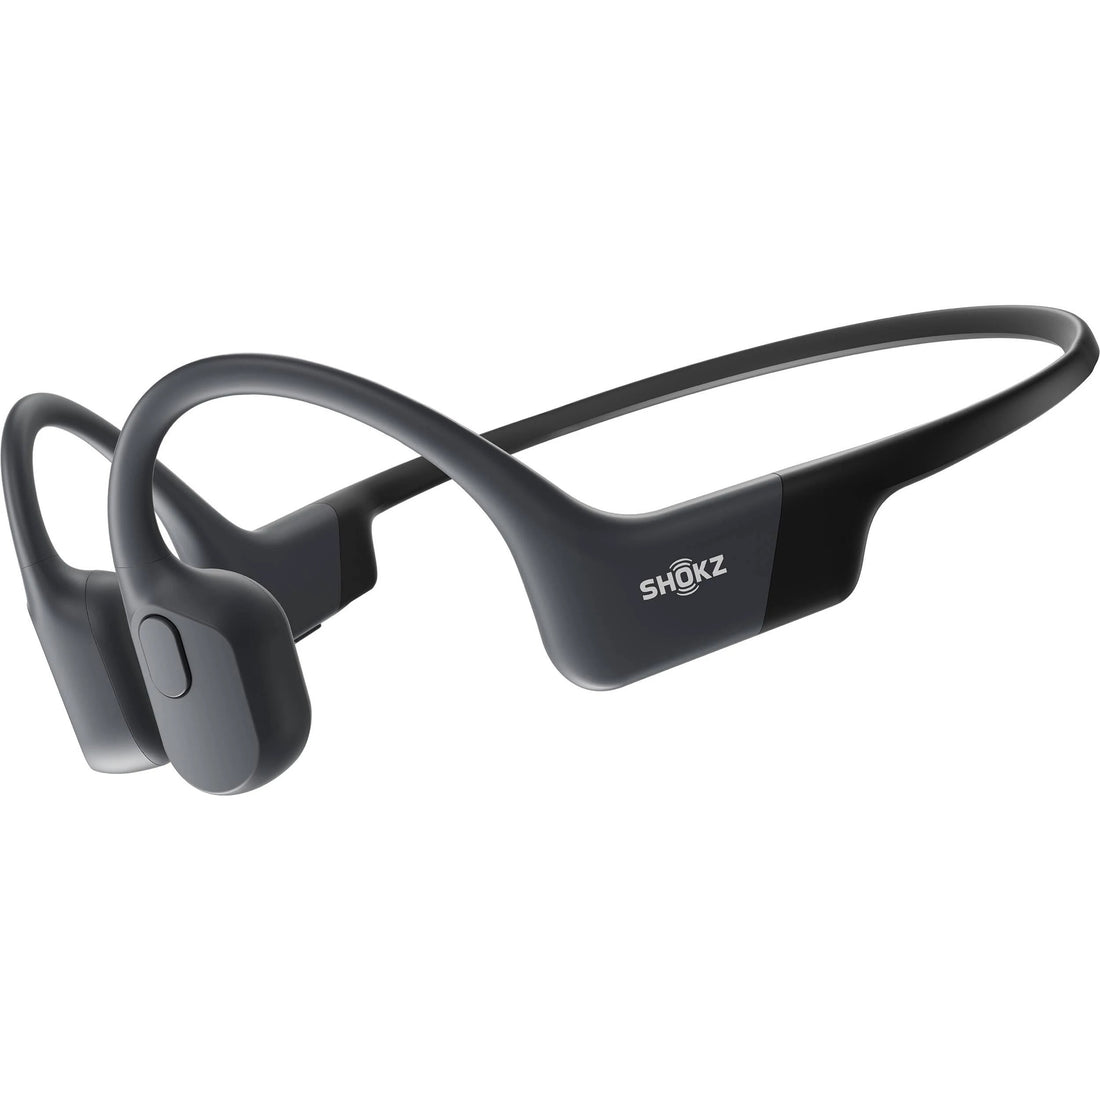 Shokz OpenRun Mini Bone Conduction Open-Ear Endurance Headphones - Black (Certified Refurbished)